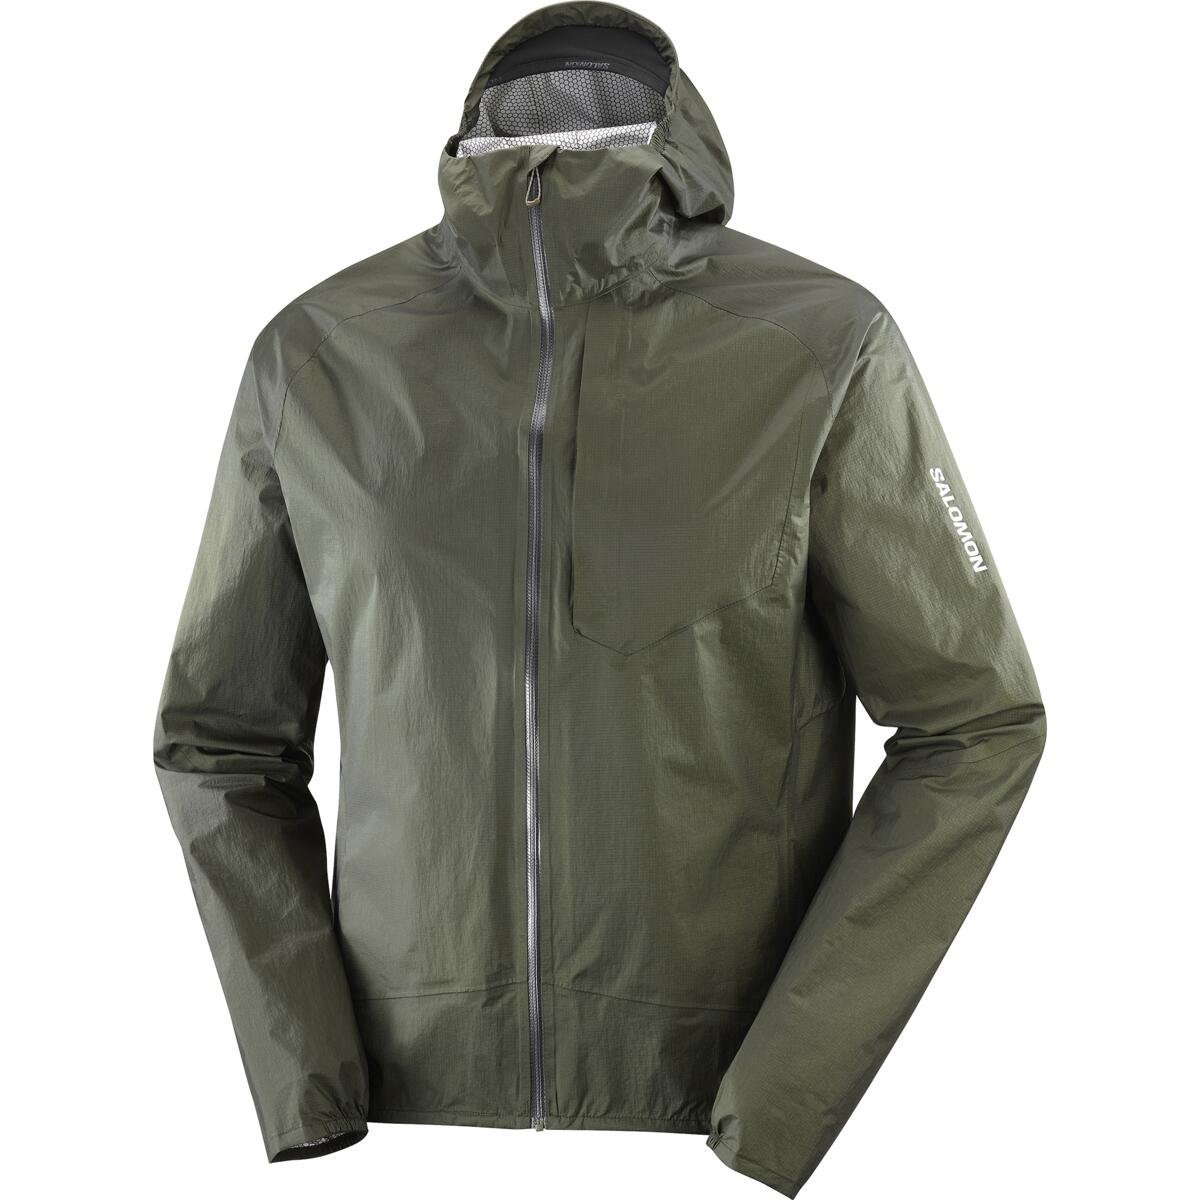 Bunda Salomon Bonatti WP Jacket M - zelená